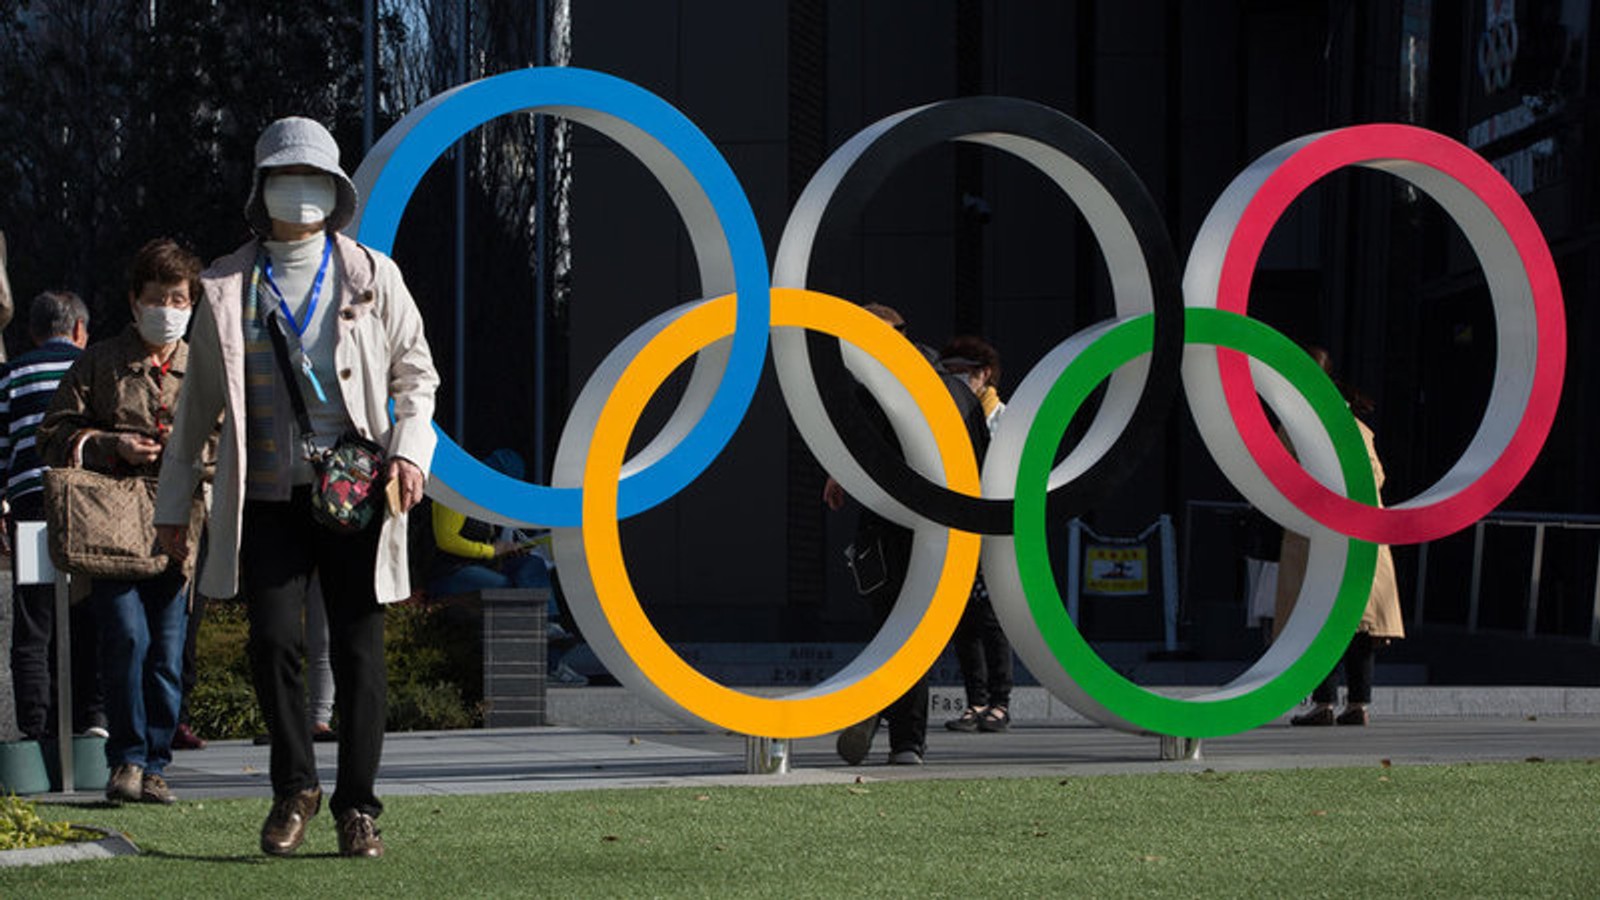 Організатори Олімпійських ігор в Токіо на тлі пандемії відмовилися від допуску глядачів на змагання